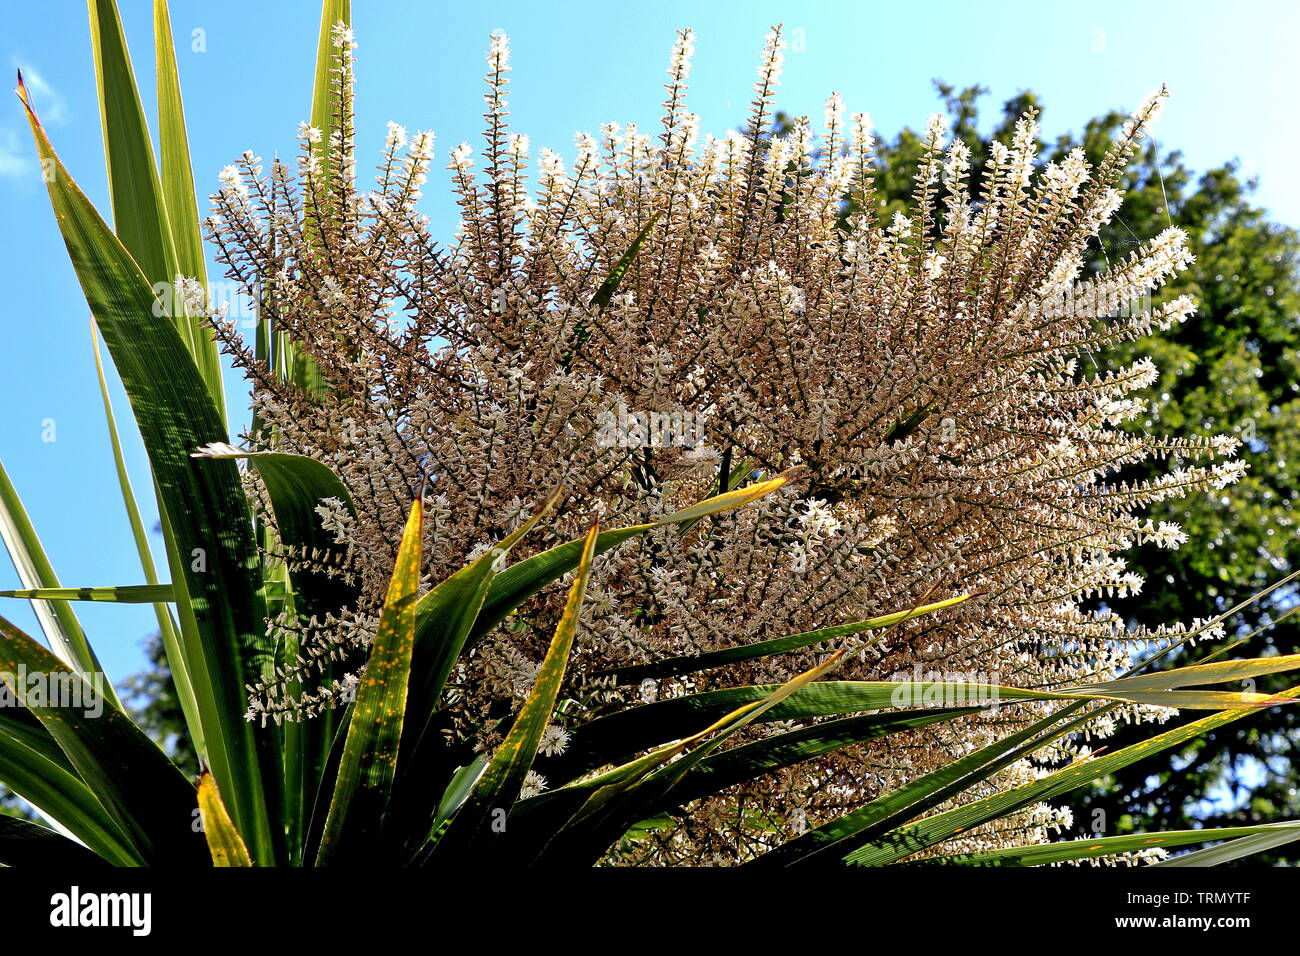 Torbay, Palm, Palm (o repollo Cordyline australis) es un miembro de la familia de espárragos (Asparagaceae), un árbol siempreverde-como la planta que crece hasta 20m Foto de stock